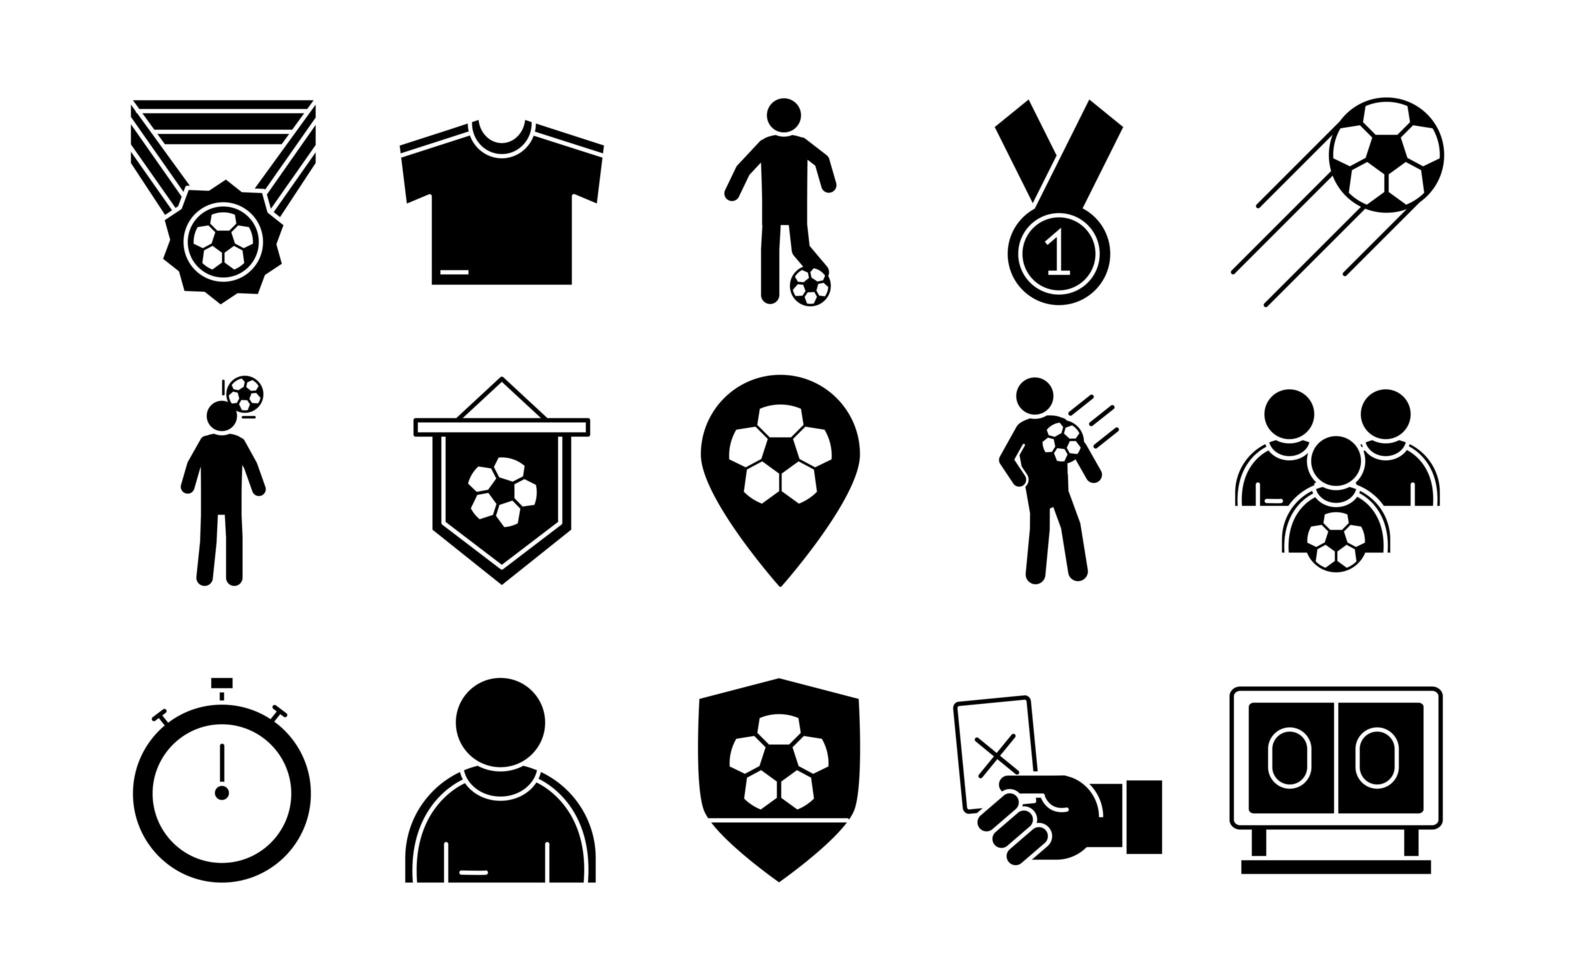 voetbal spel trophy league recreatief sport toernooi silhouet stijl iconen set vector